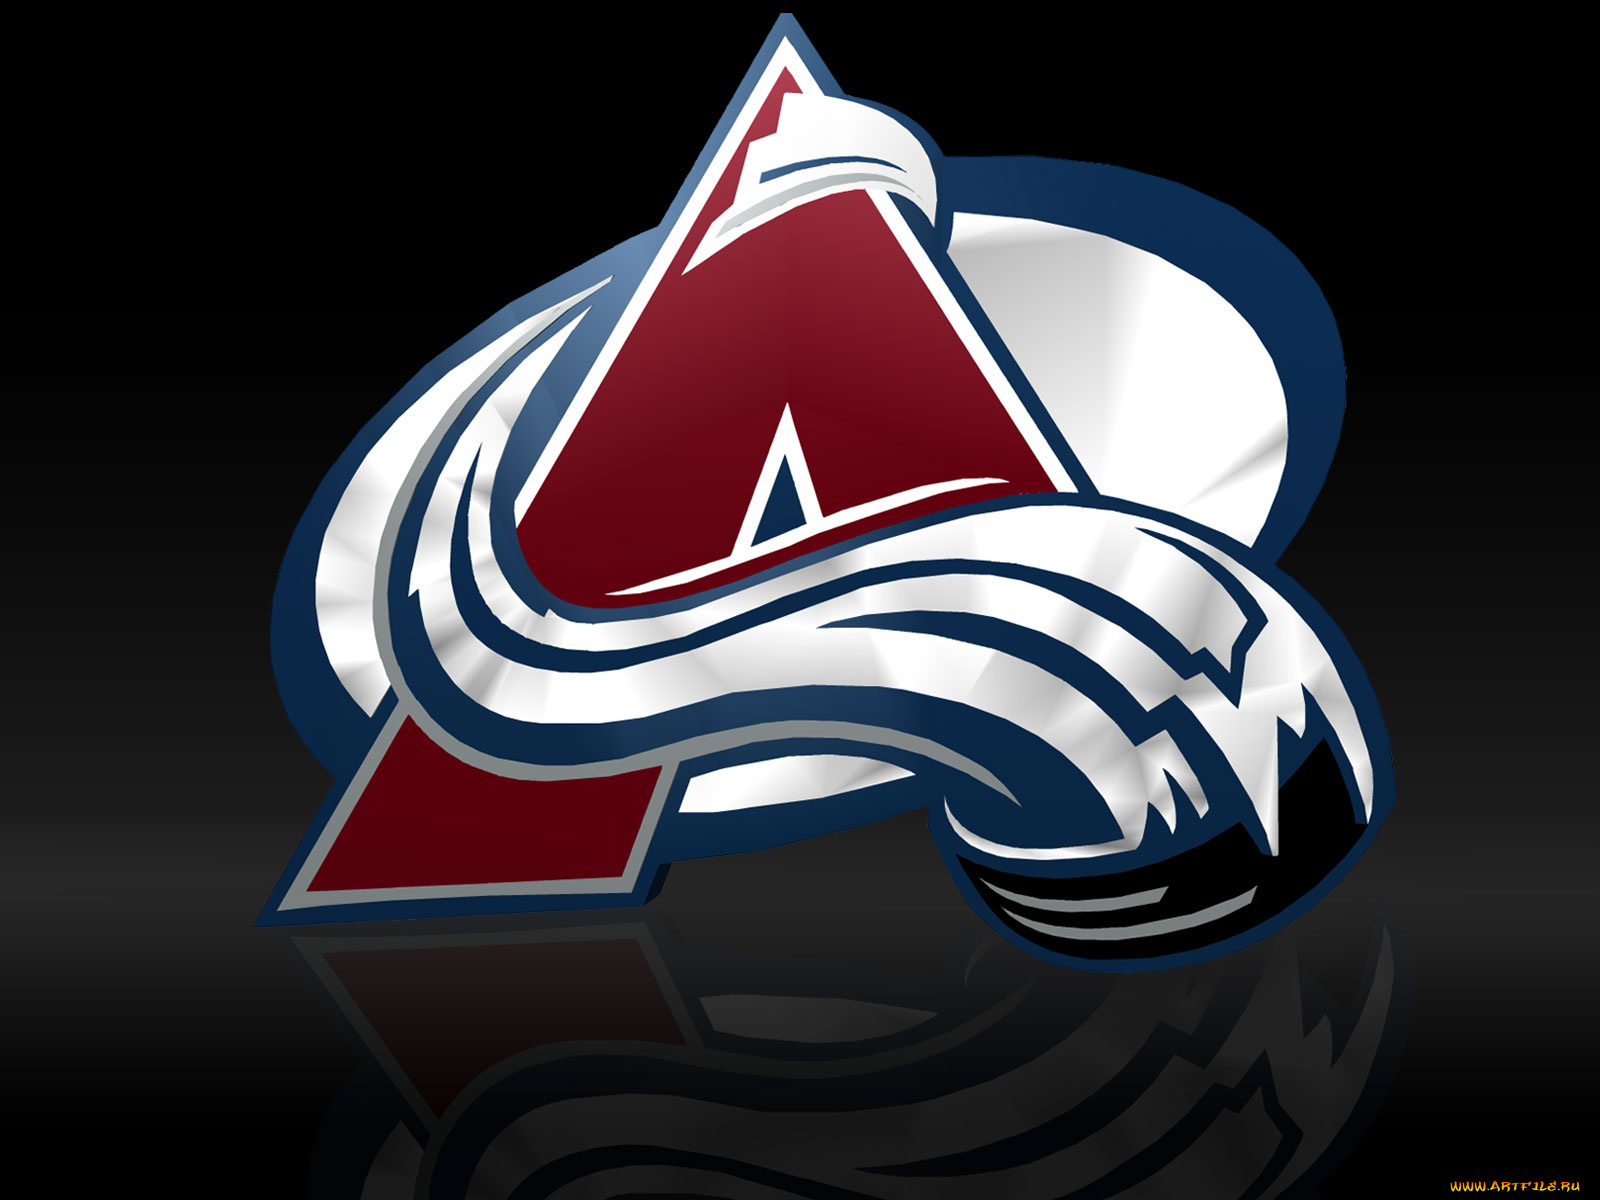 Логотипы команд нхл. Колорадо Эвеланш эмблема. Колорадо команда НХЛ. Эмблемы NHL команд. Колорадо Эвеланш логотип НХЛ.